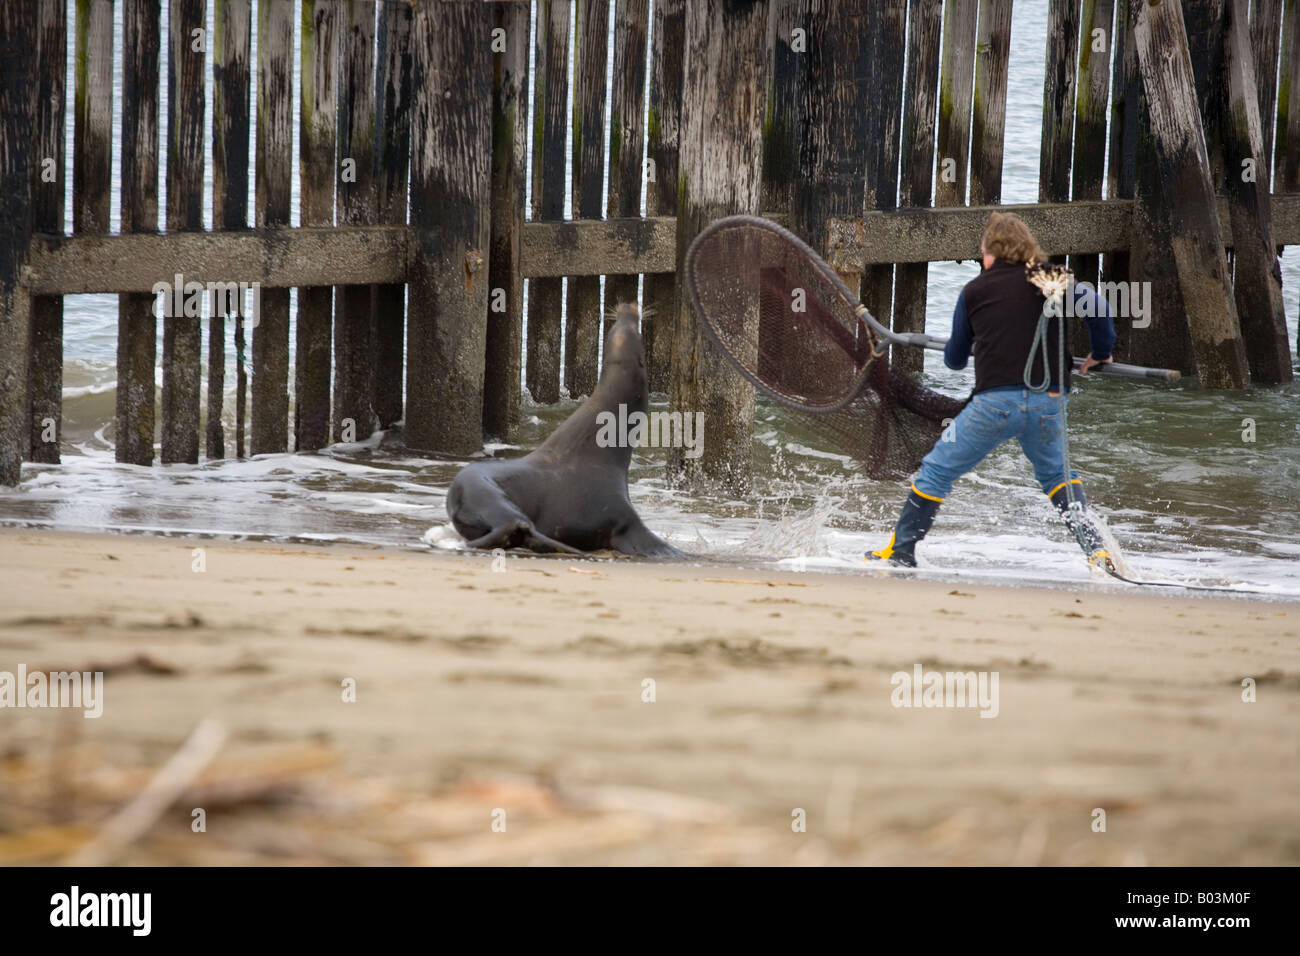 Marine Mammal Center volunteer tente de sauver un lion de mer blessés Banque D'Images